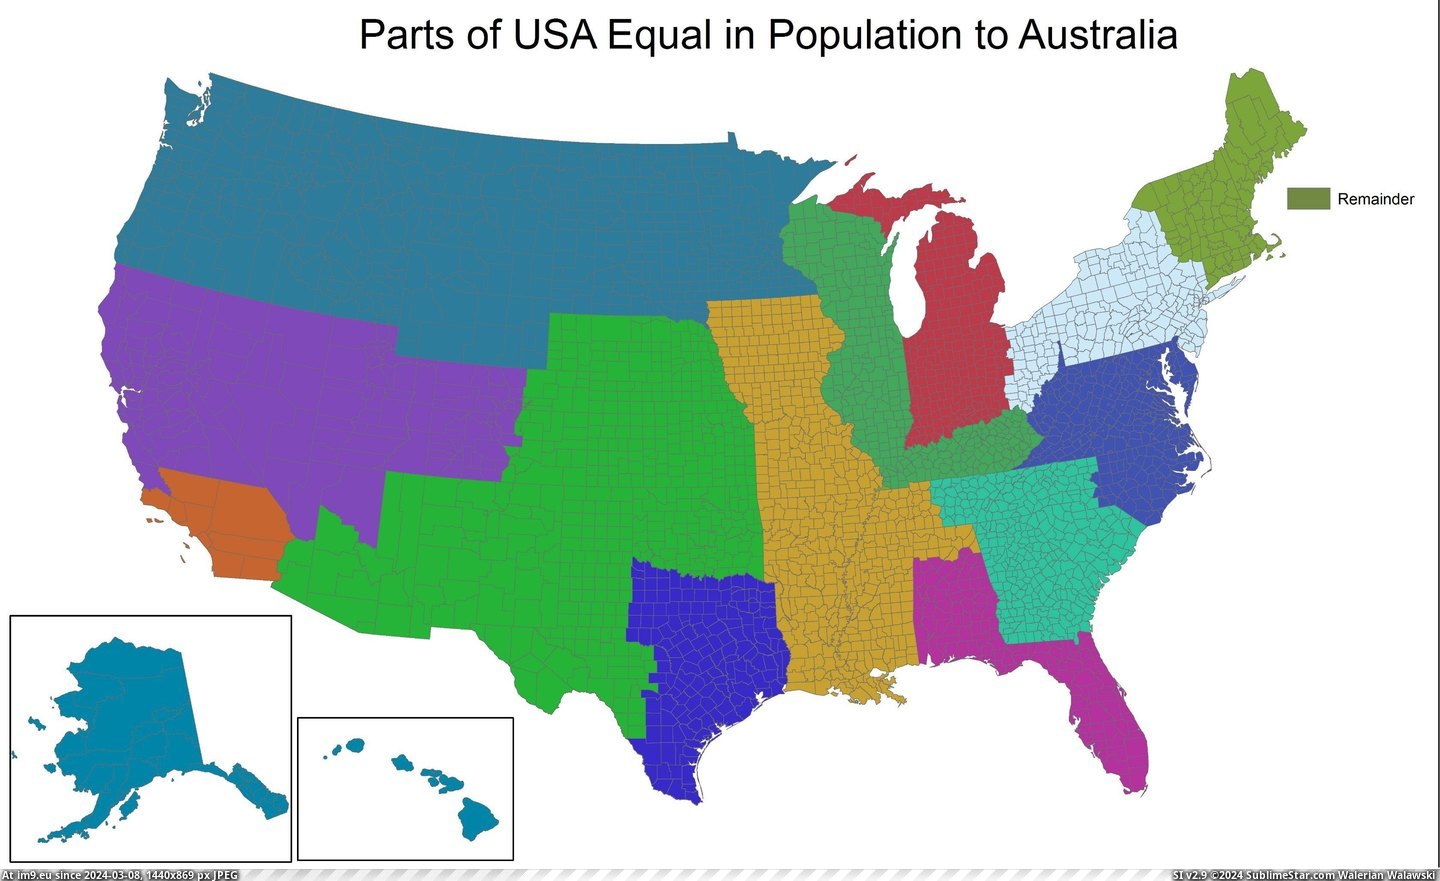 #Parts #Population #Equal #Australia #Usa [Mapporn] Parts of USA Equal in Population to Australia [5600x3400] Pic. (Bild von album My r/MAPS favs))